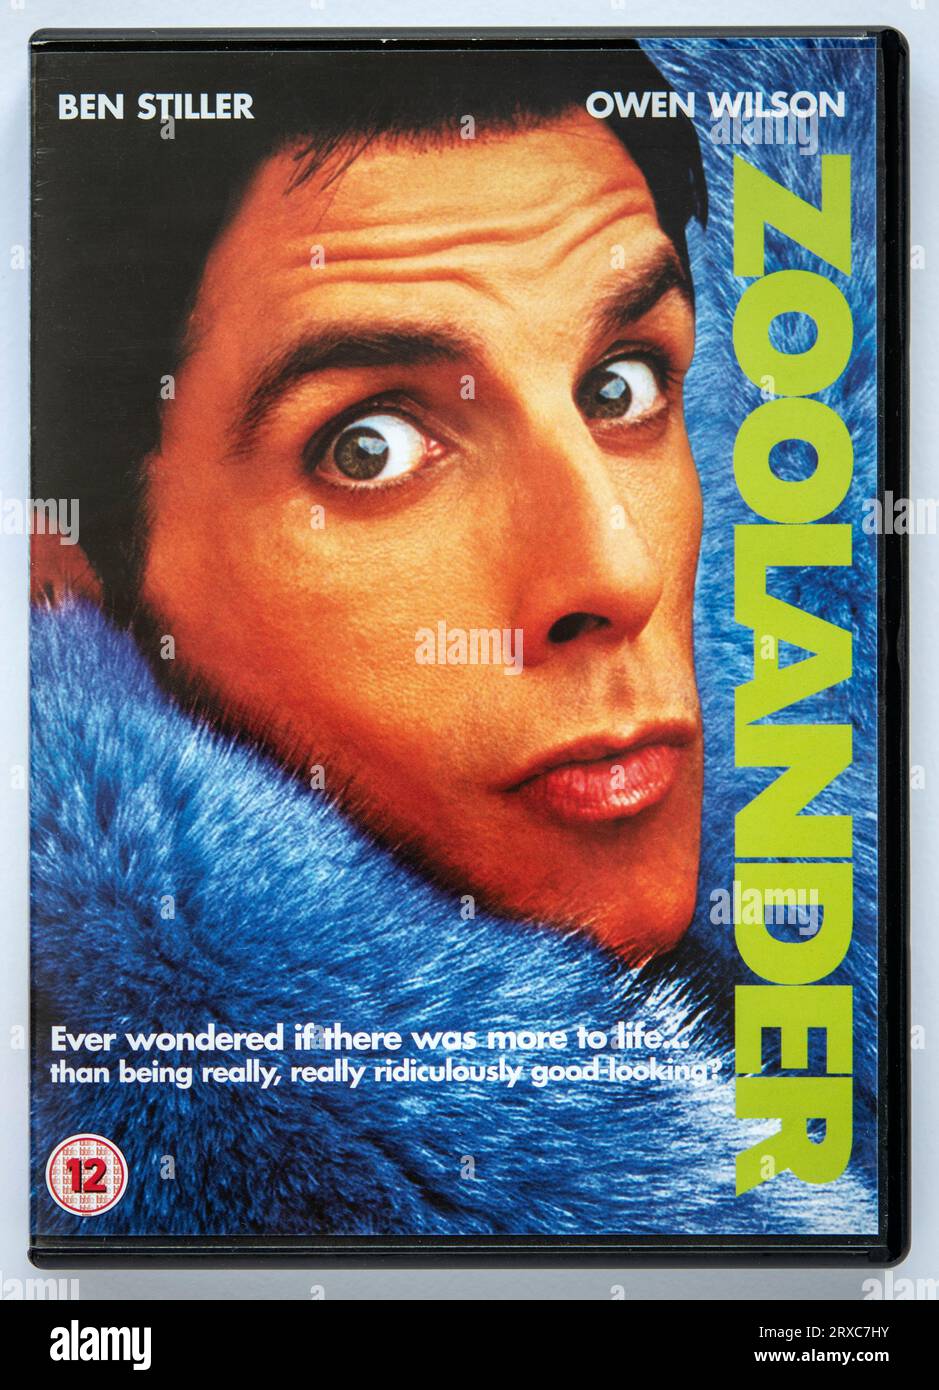 Couverture d'une copie DVD du film Zoolander, une comédie qui a été initialement sorti dans les cinémas en 2001 Banque D'Images